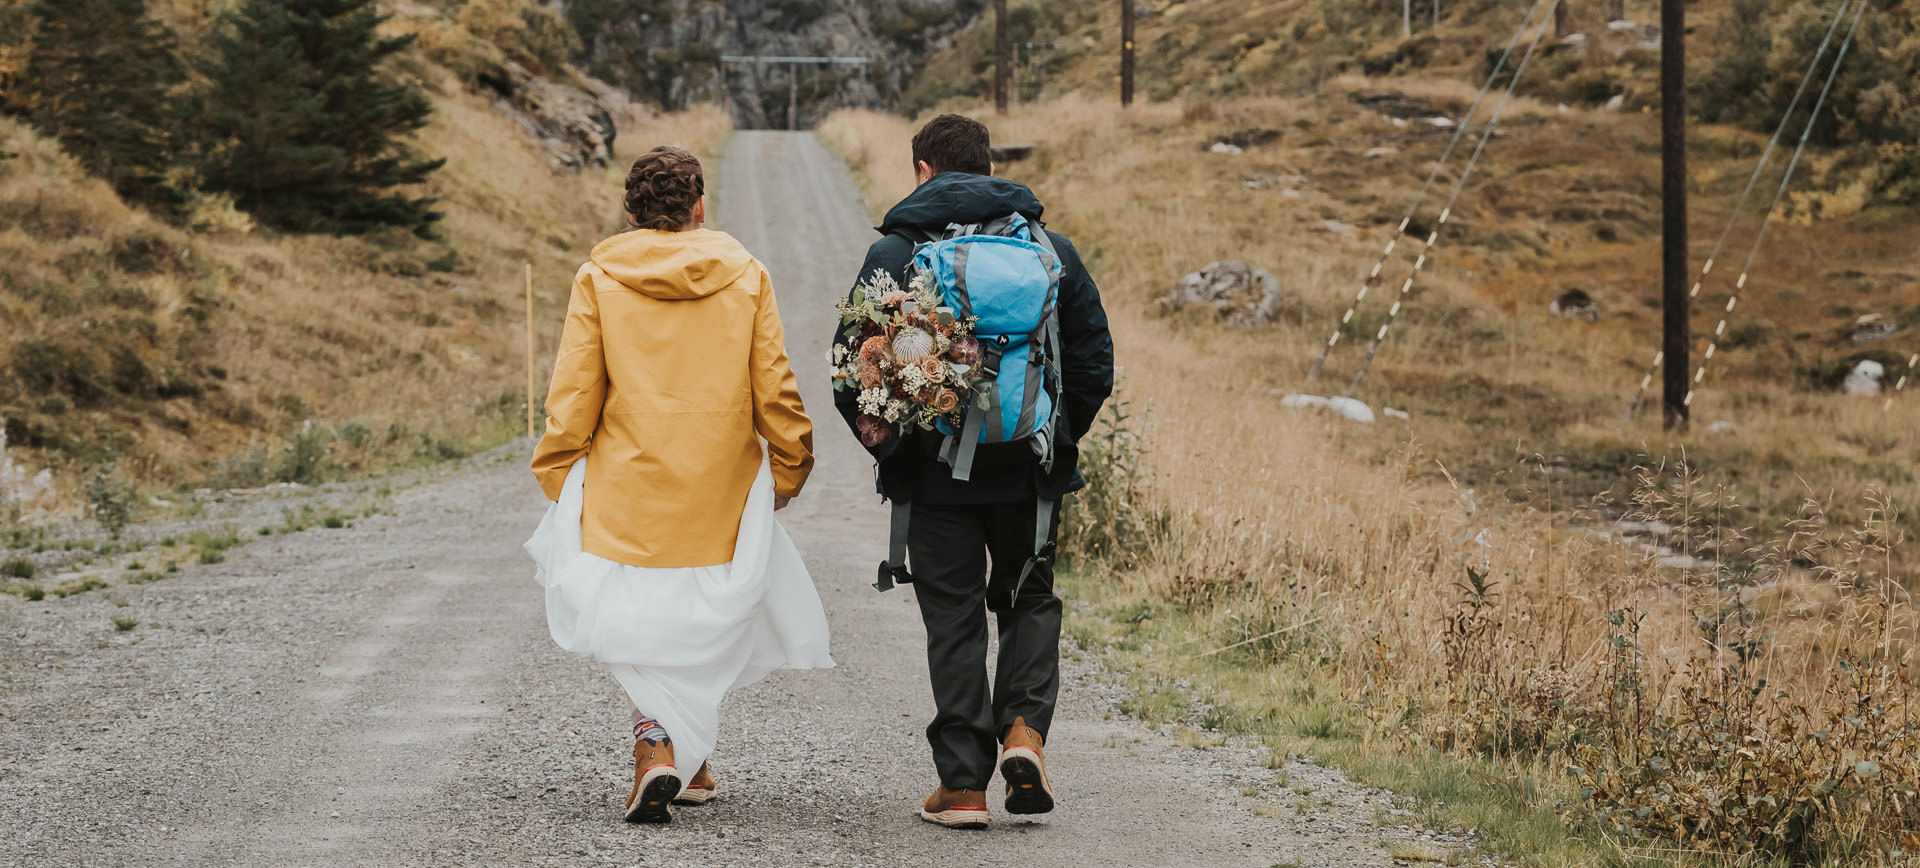 Hiking wedding in Lofoten Norway